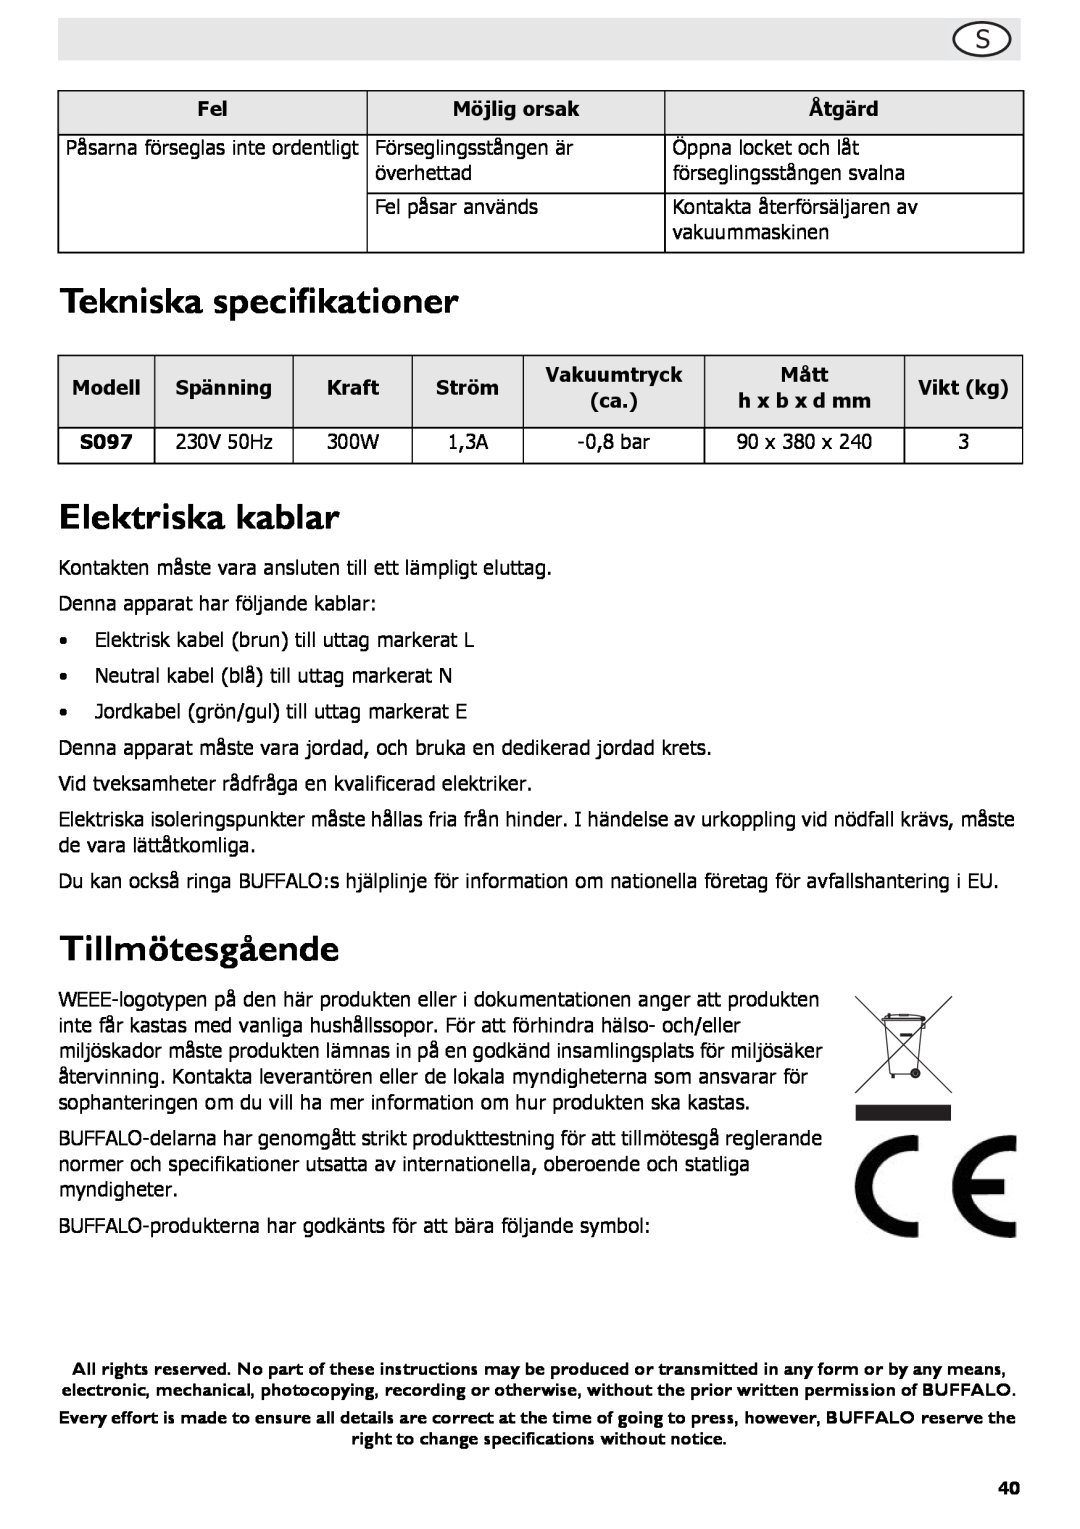 Buffalo Tools S097 instruction manual Tekniska specifikationer, Elektriska kablar, Tillmötesgående 